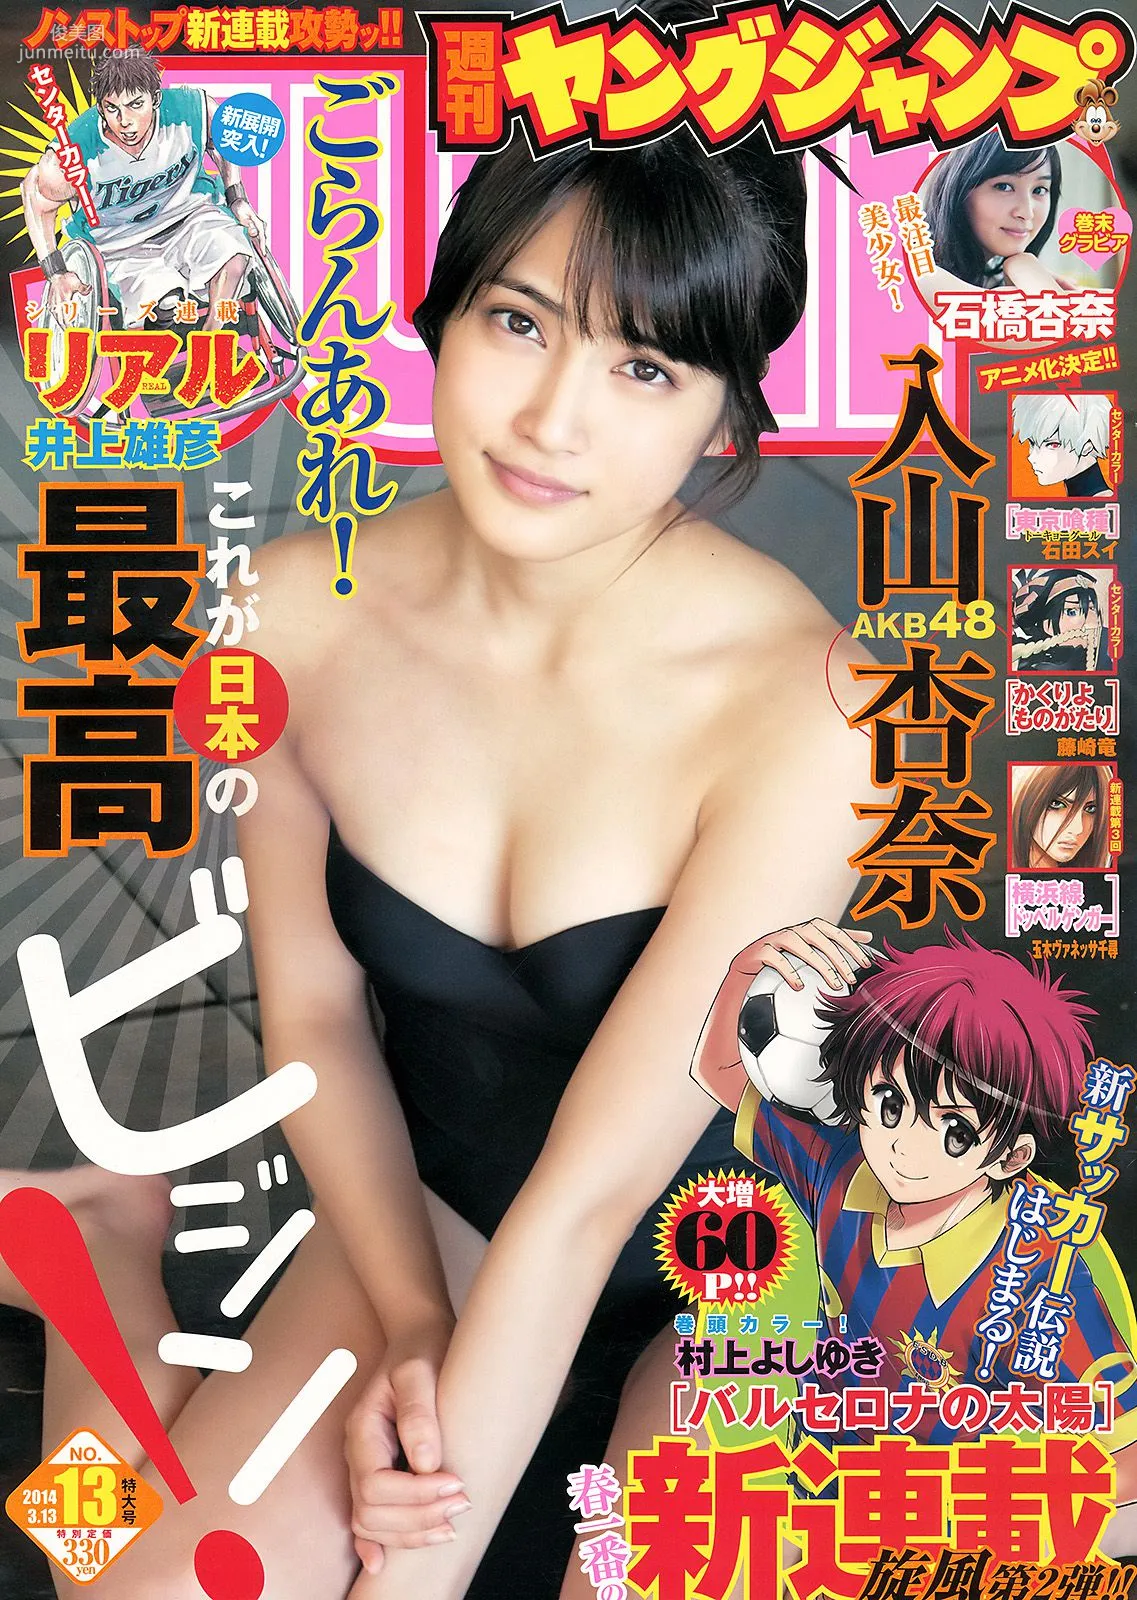 入山杏奈 石橋杏奈 [Weekly Young Jump] 2014年No.13 写真杂志1